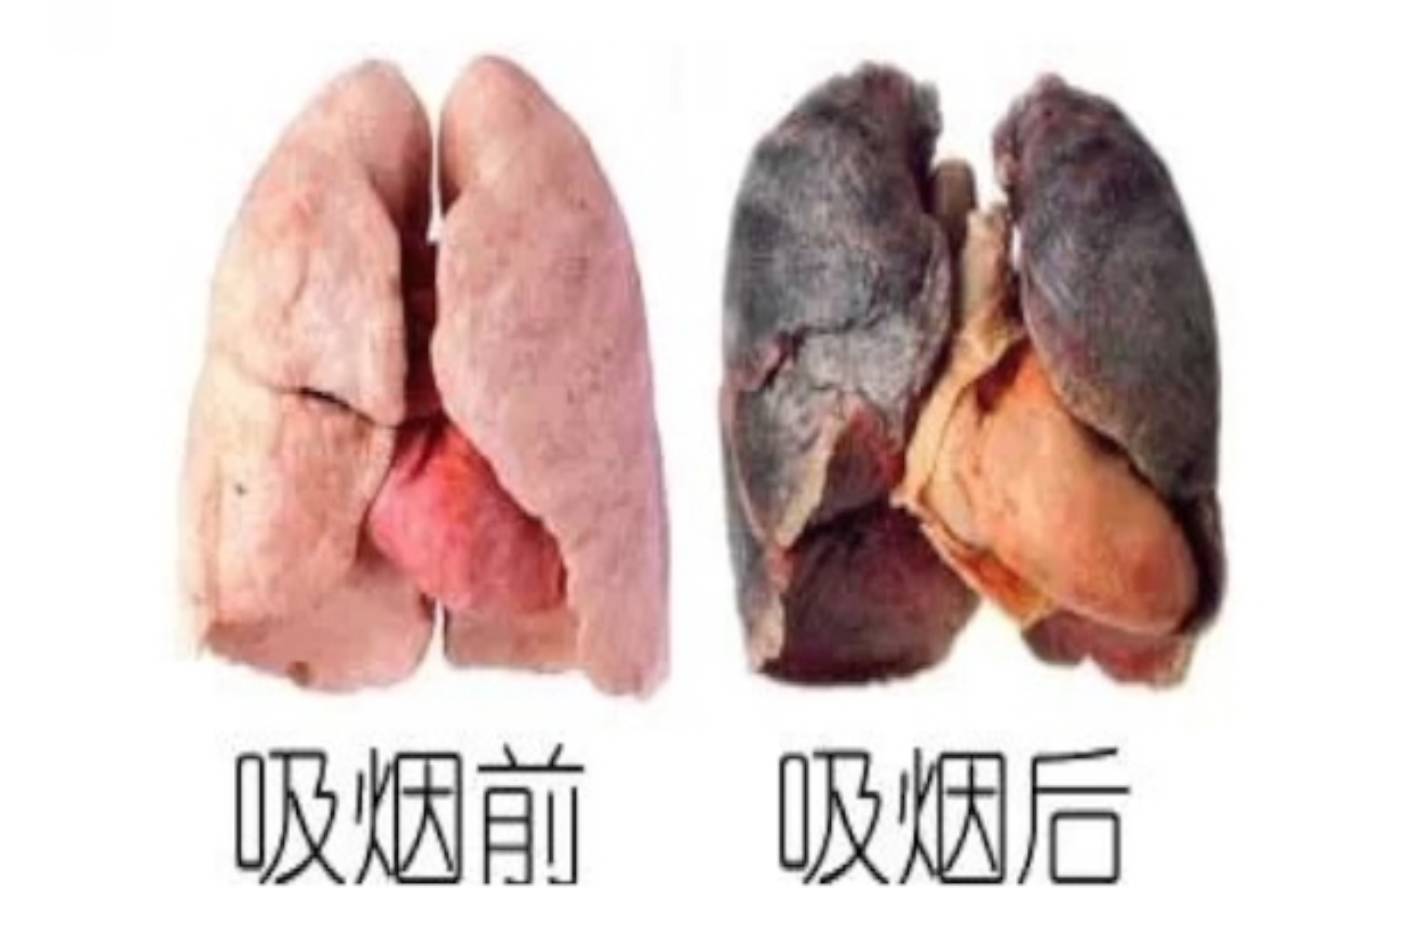 吸烟前后肺部对比照片图片